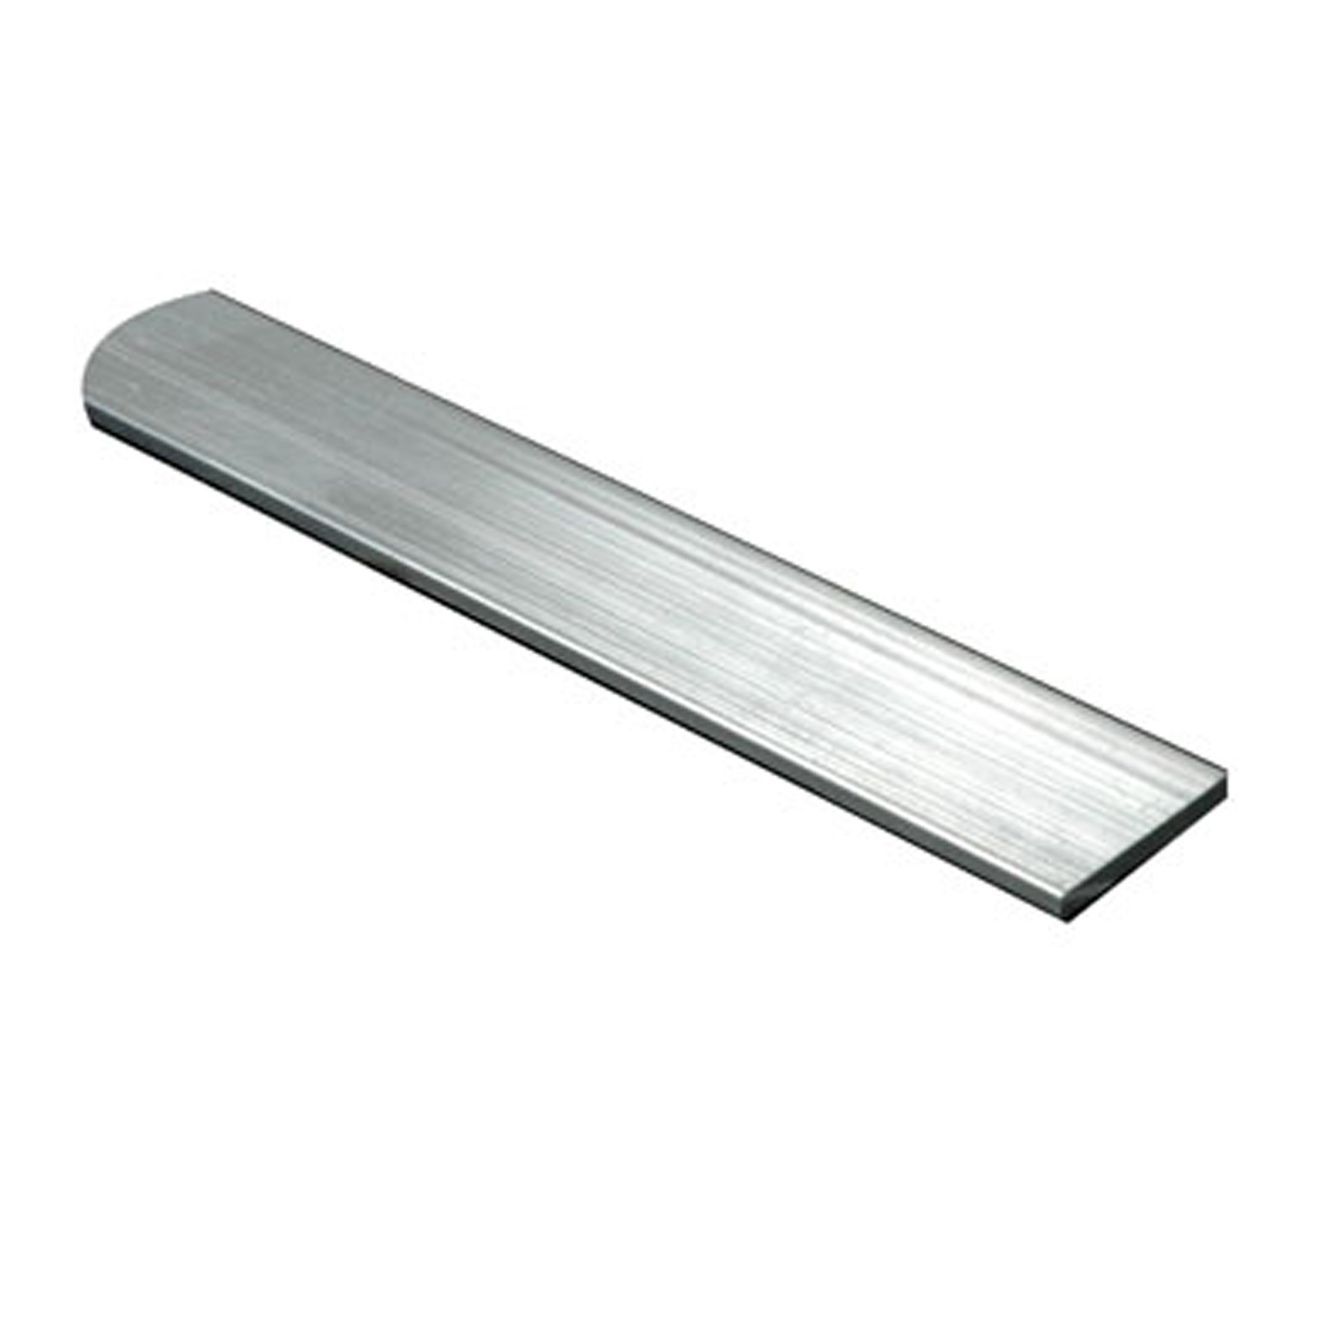 10mm x 3mm x 2000mm Flat Bar Aluminium Various Sizes 2m Long